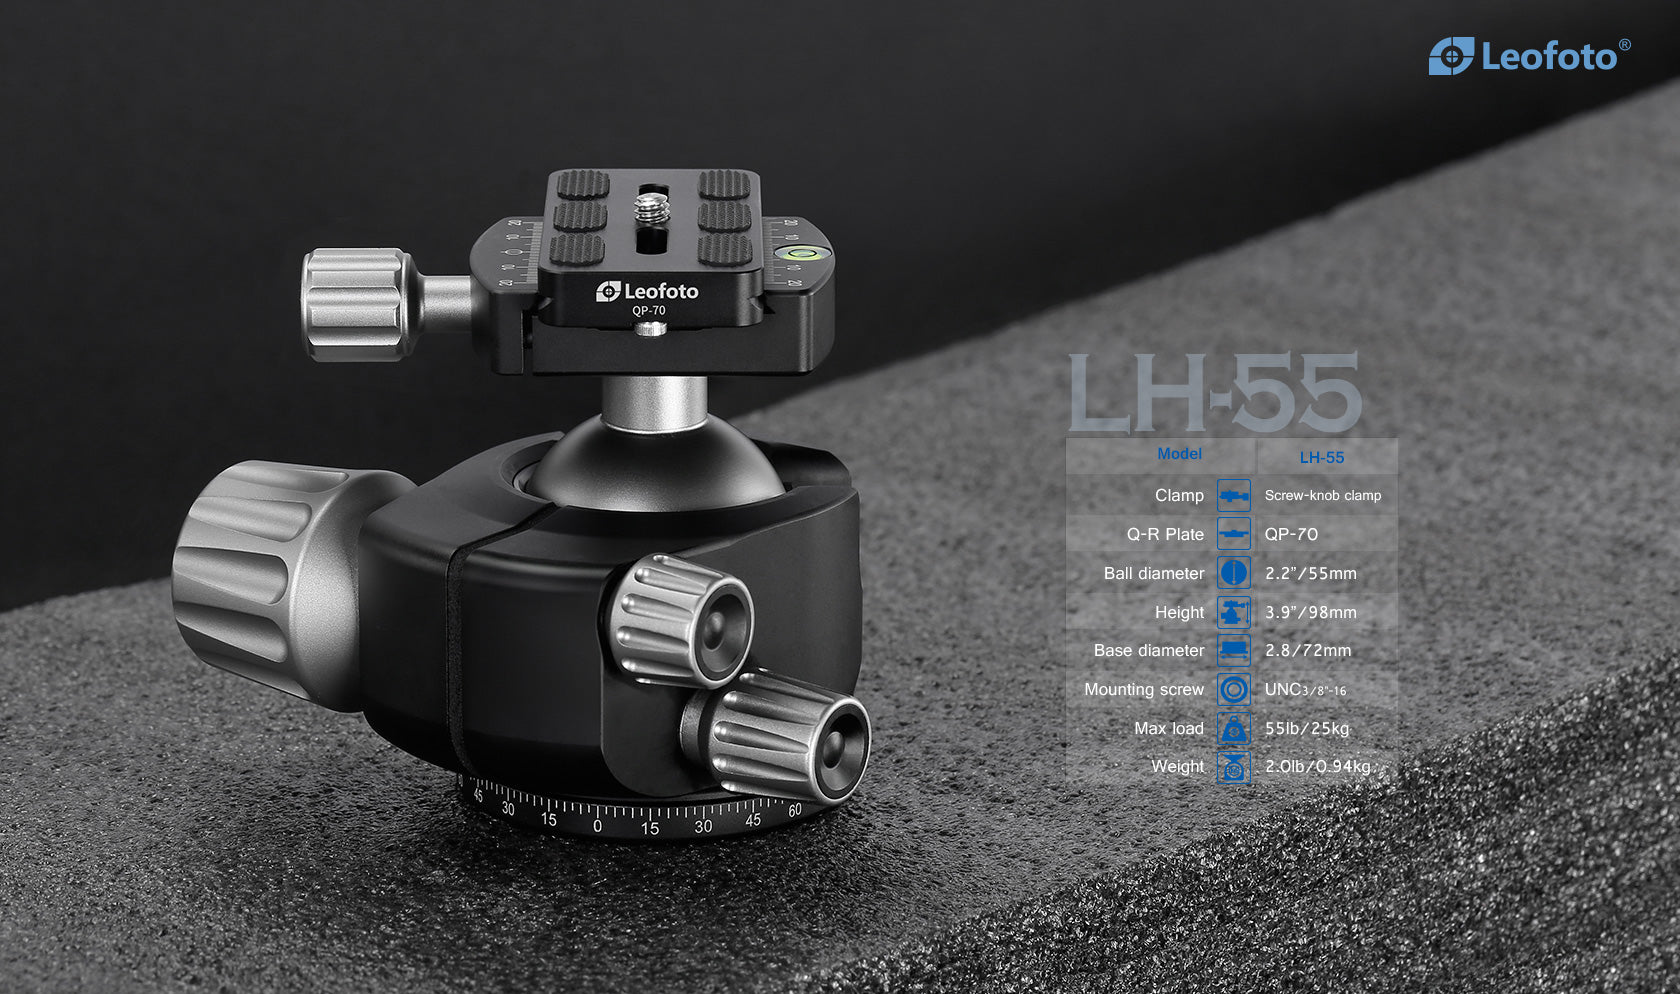 Leofoto LM-362C Short Carbon Fiber Tripod with 75mm Video Bowl+Platform and Bag | Max Load 99lb